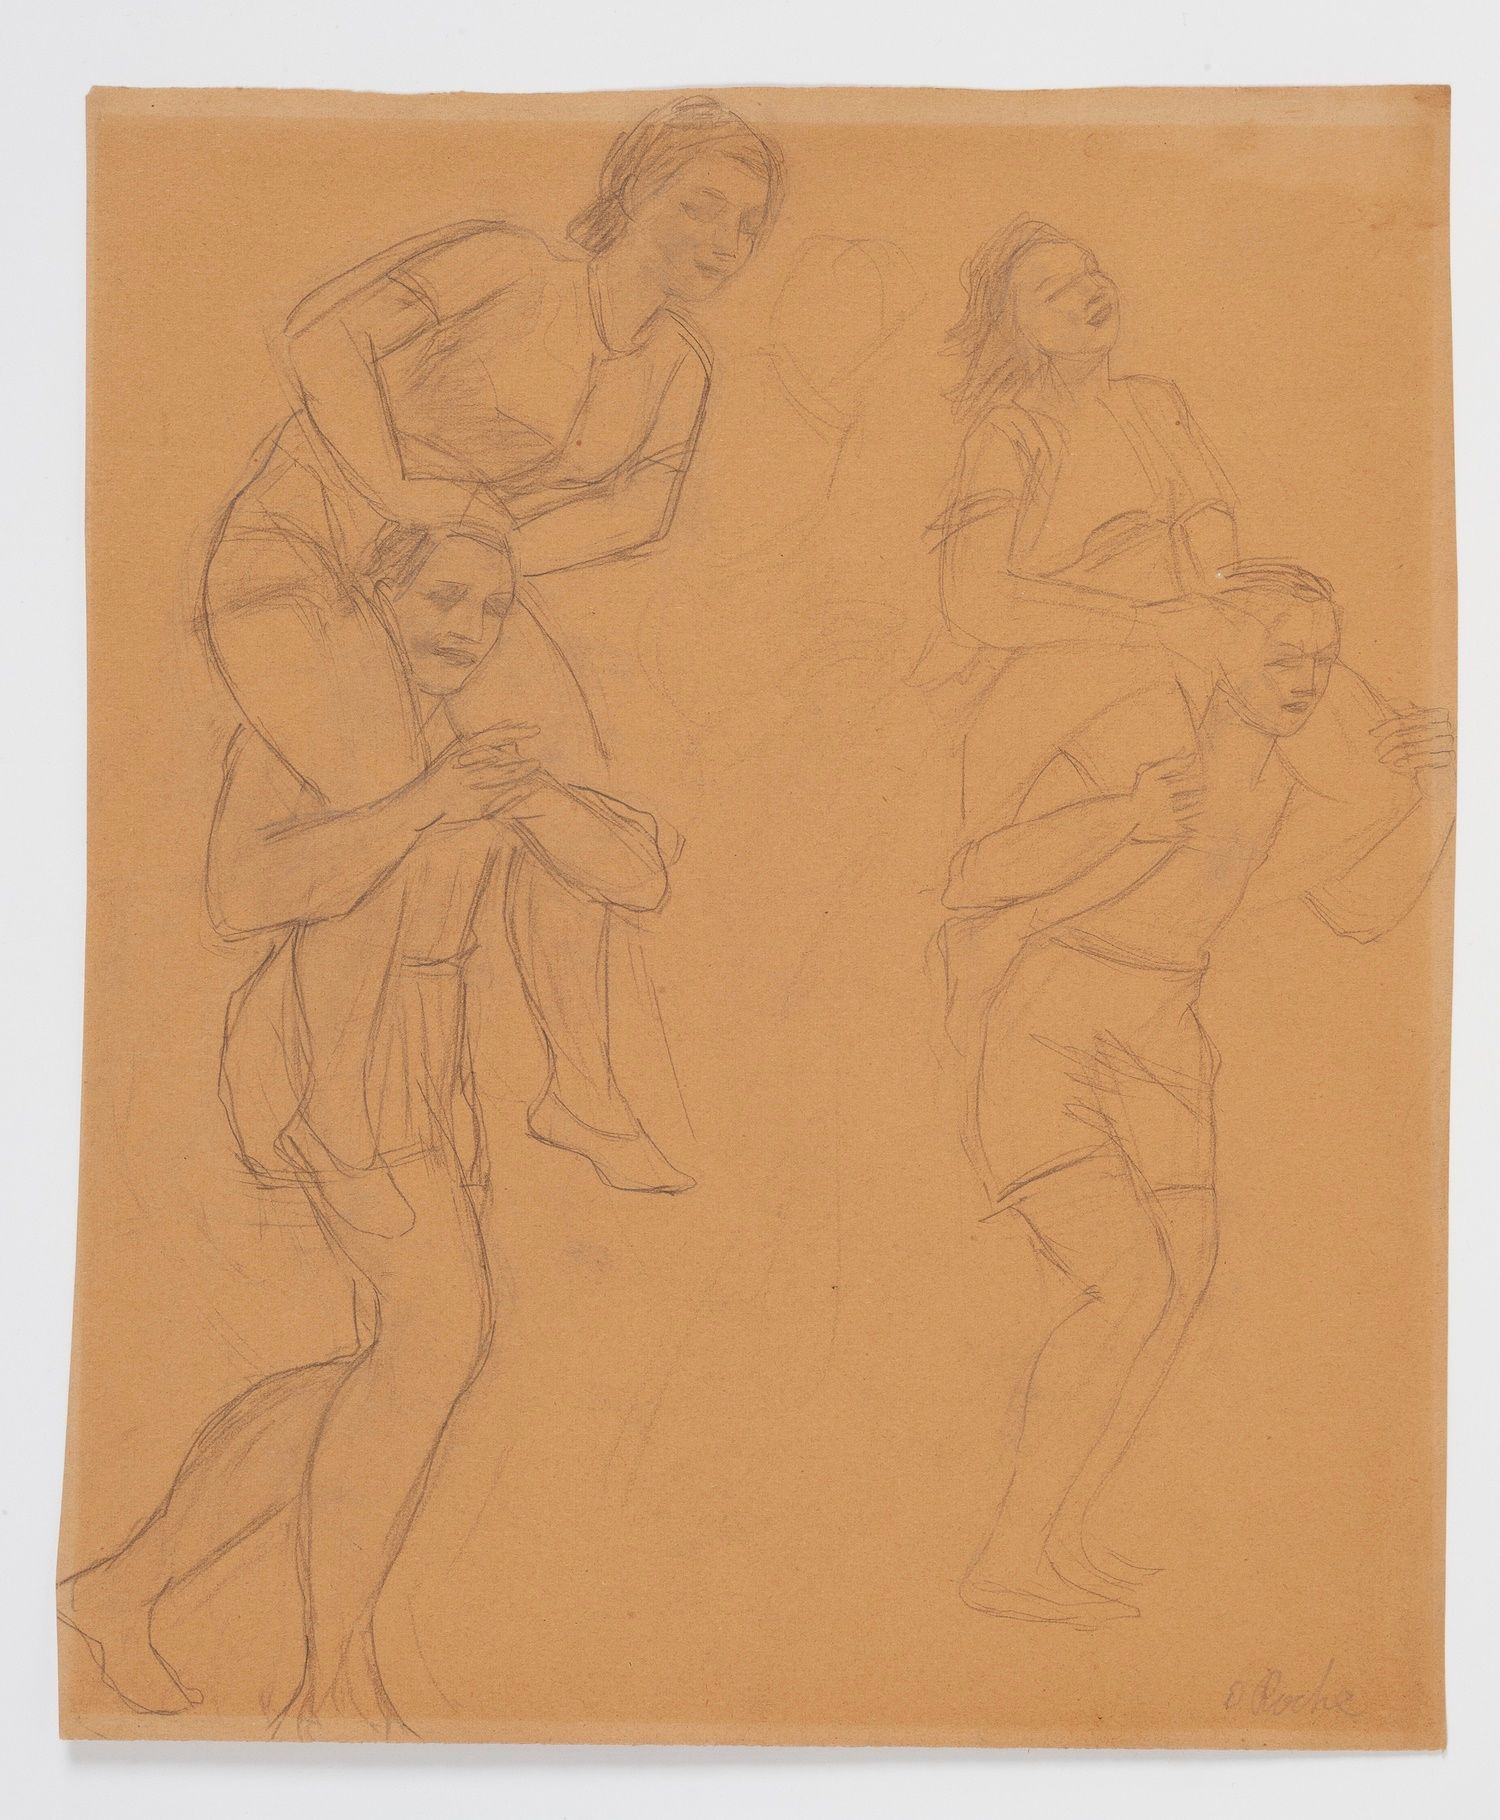 Null Odilon ROCHE (1868-1947) 

Studie Körper

Bleistift auf braunem Papier, unt&hellip;